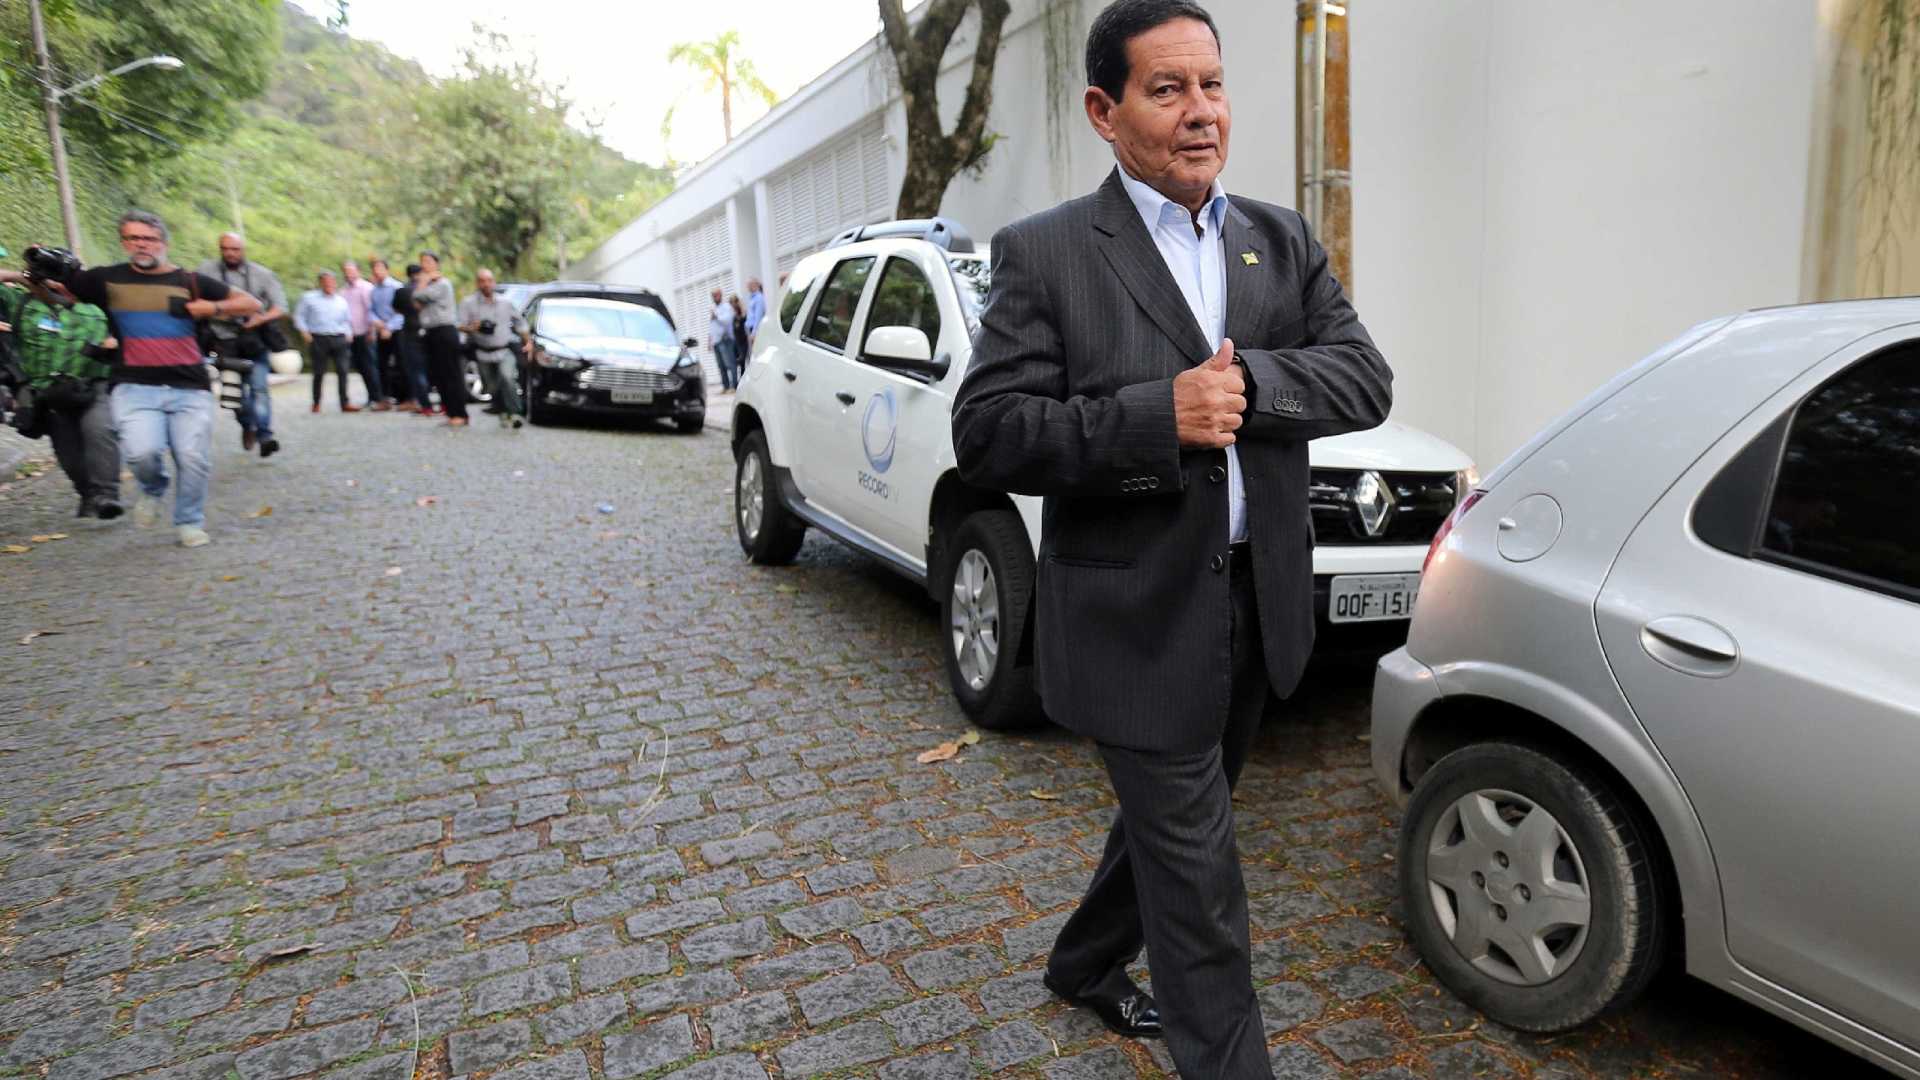 Vice de Bolsonaro viajou em avião de empresário e não declarou ao TSE